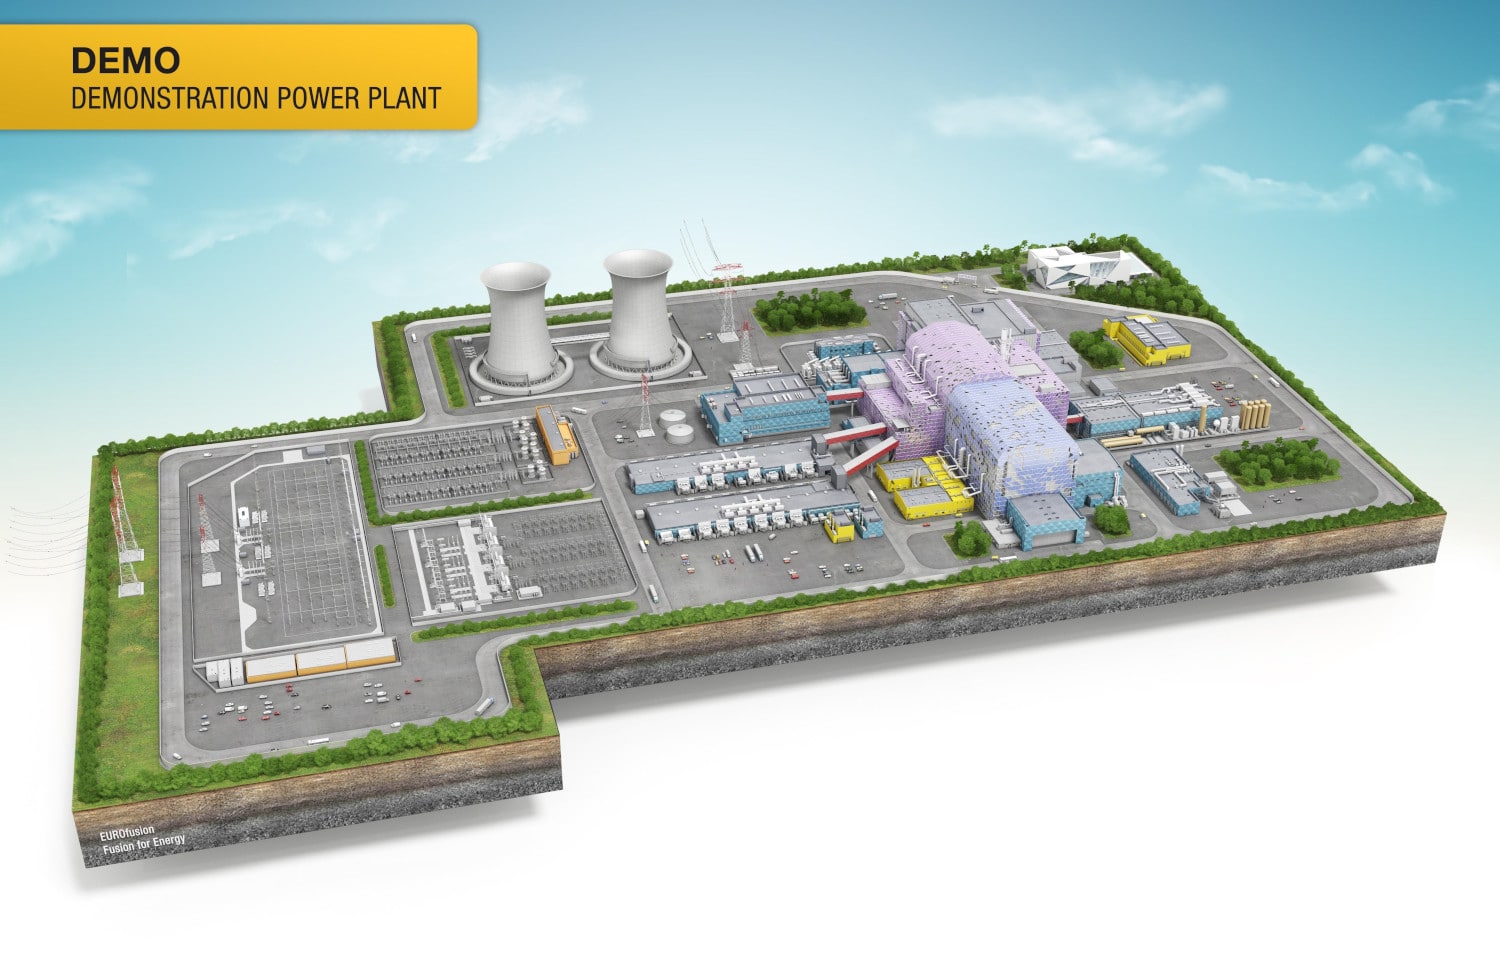 Das kommerzielle Kernfusionskraftwerk EUROfusion wird derzeit entworfen